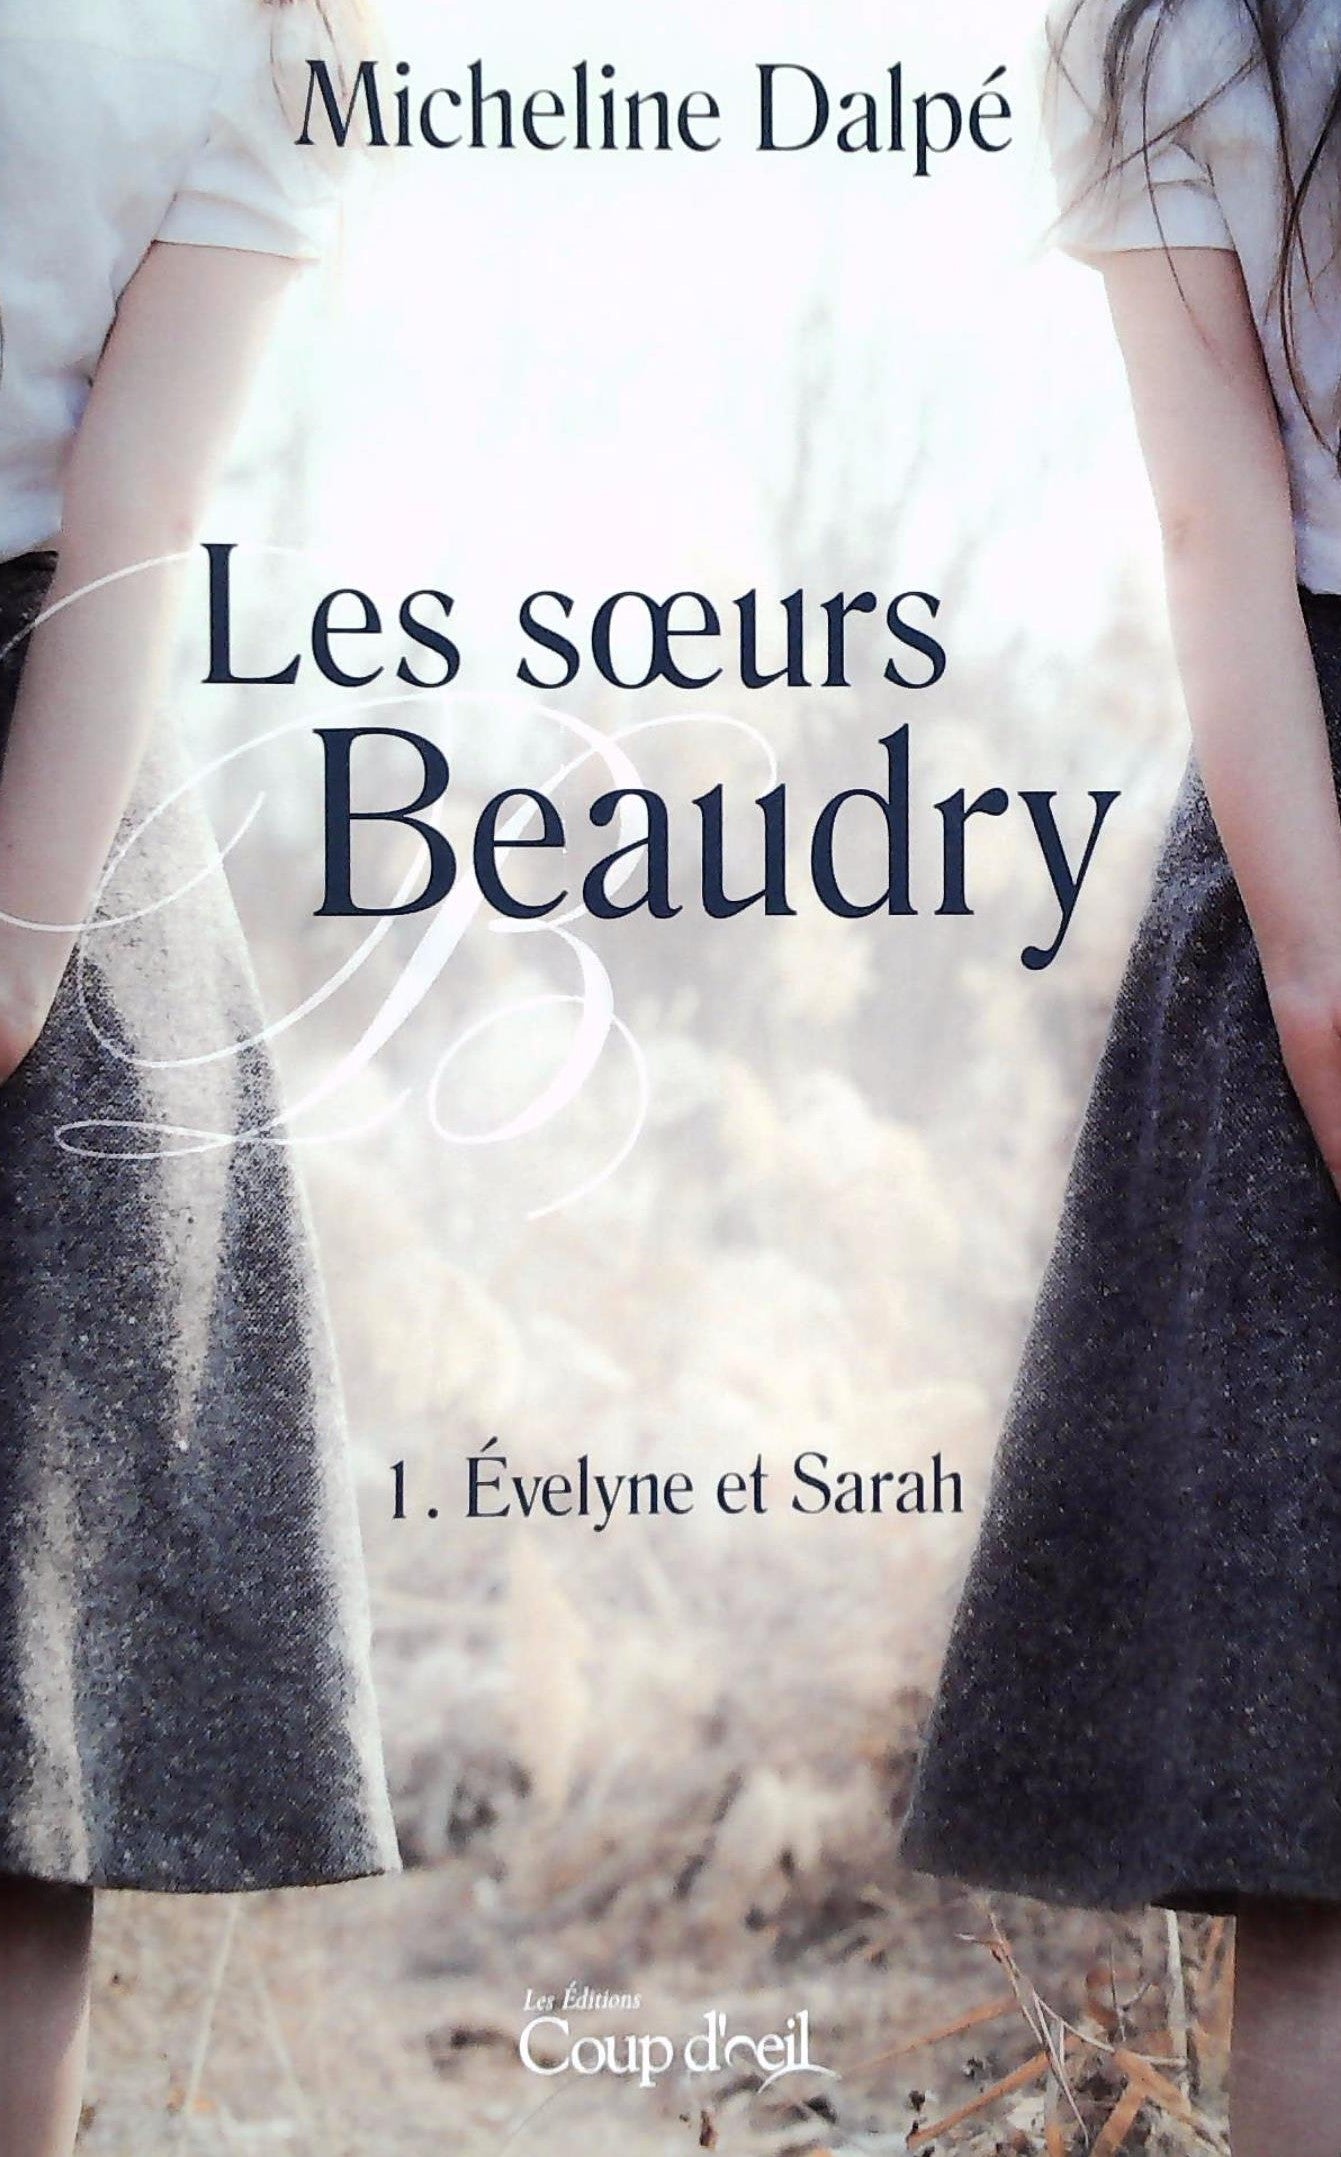 Livre ISBN  Les soeurs Beaudry # 1 : Évelyne et Sarah (Micheline Dalpé)